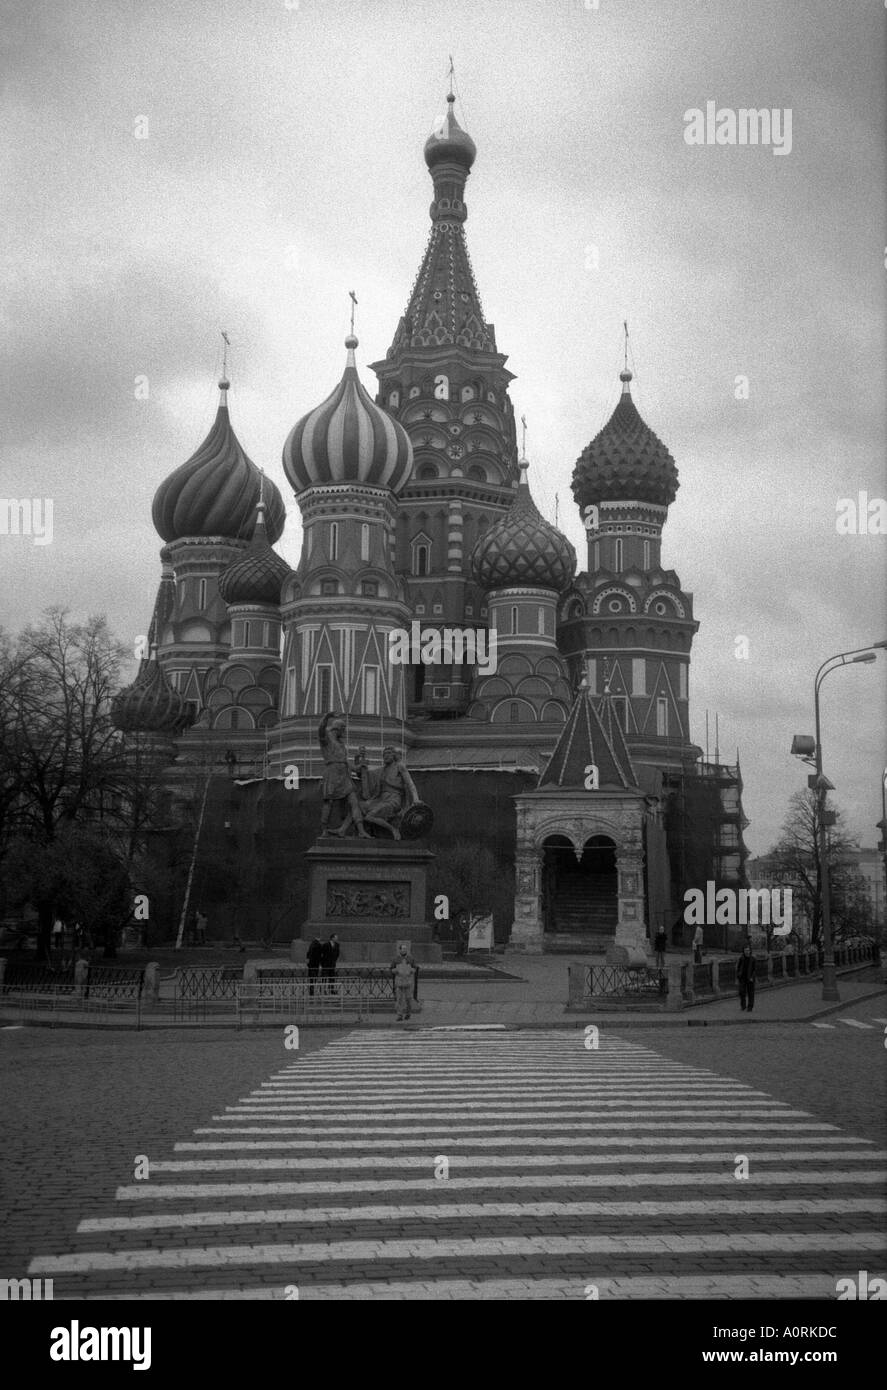 Pojarski Minin & Cathédrale monument de Saint Basile le Bienheureux de la Place Rouge Moscou Russie Fédération de Russie Eurasie Banque D'Images